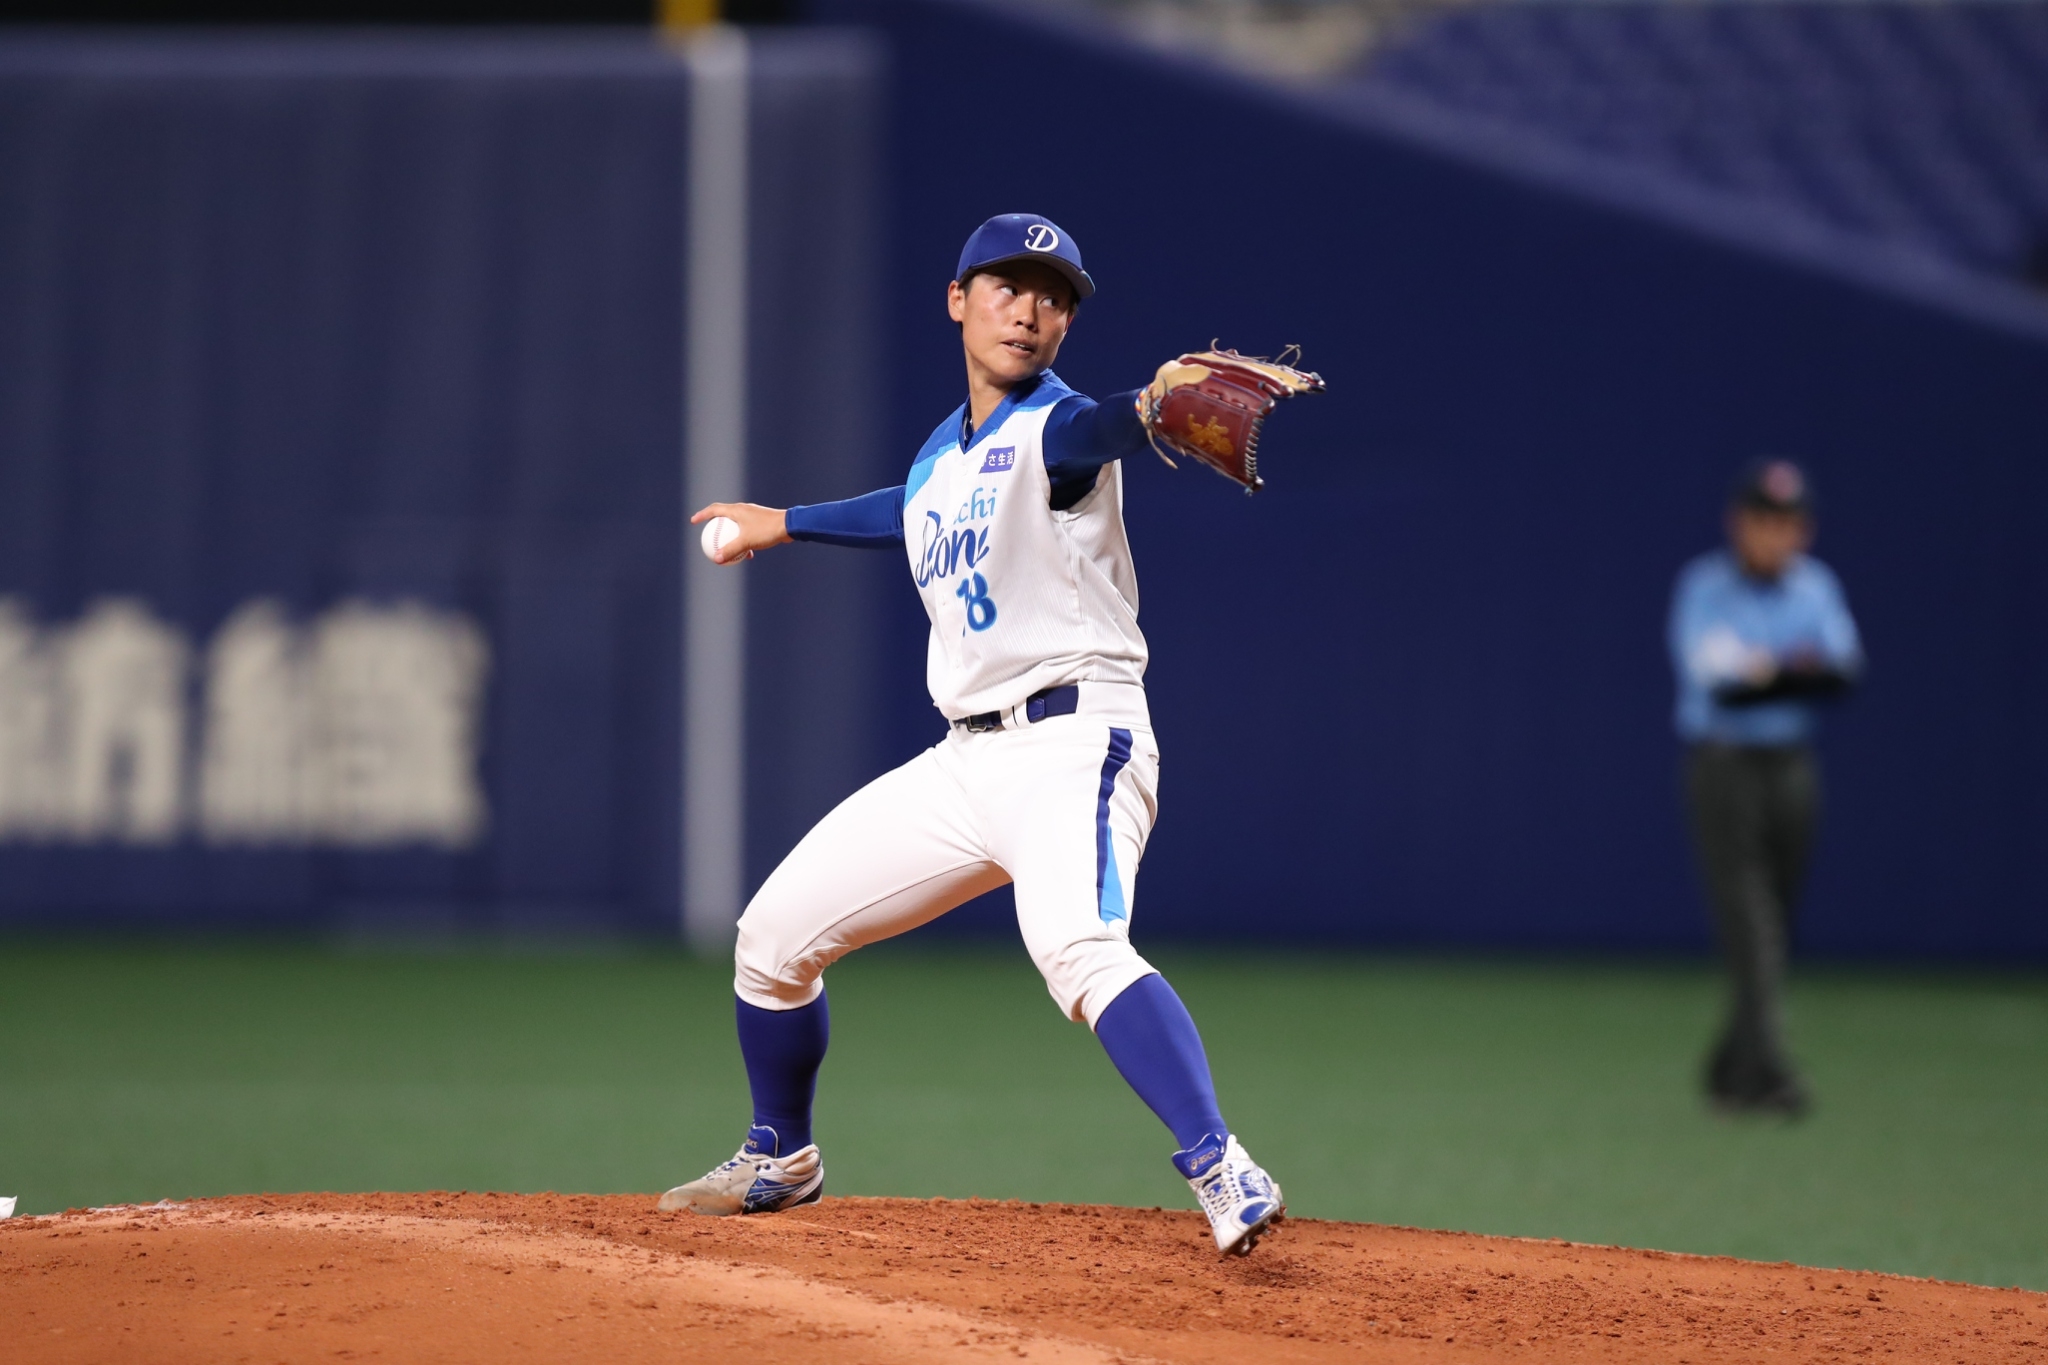 Queen of Diamonds: Japanese Women's Baseball League's star pitcher